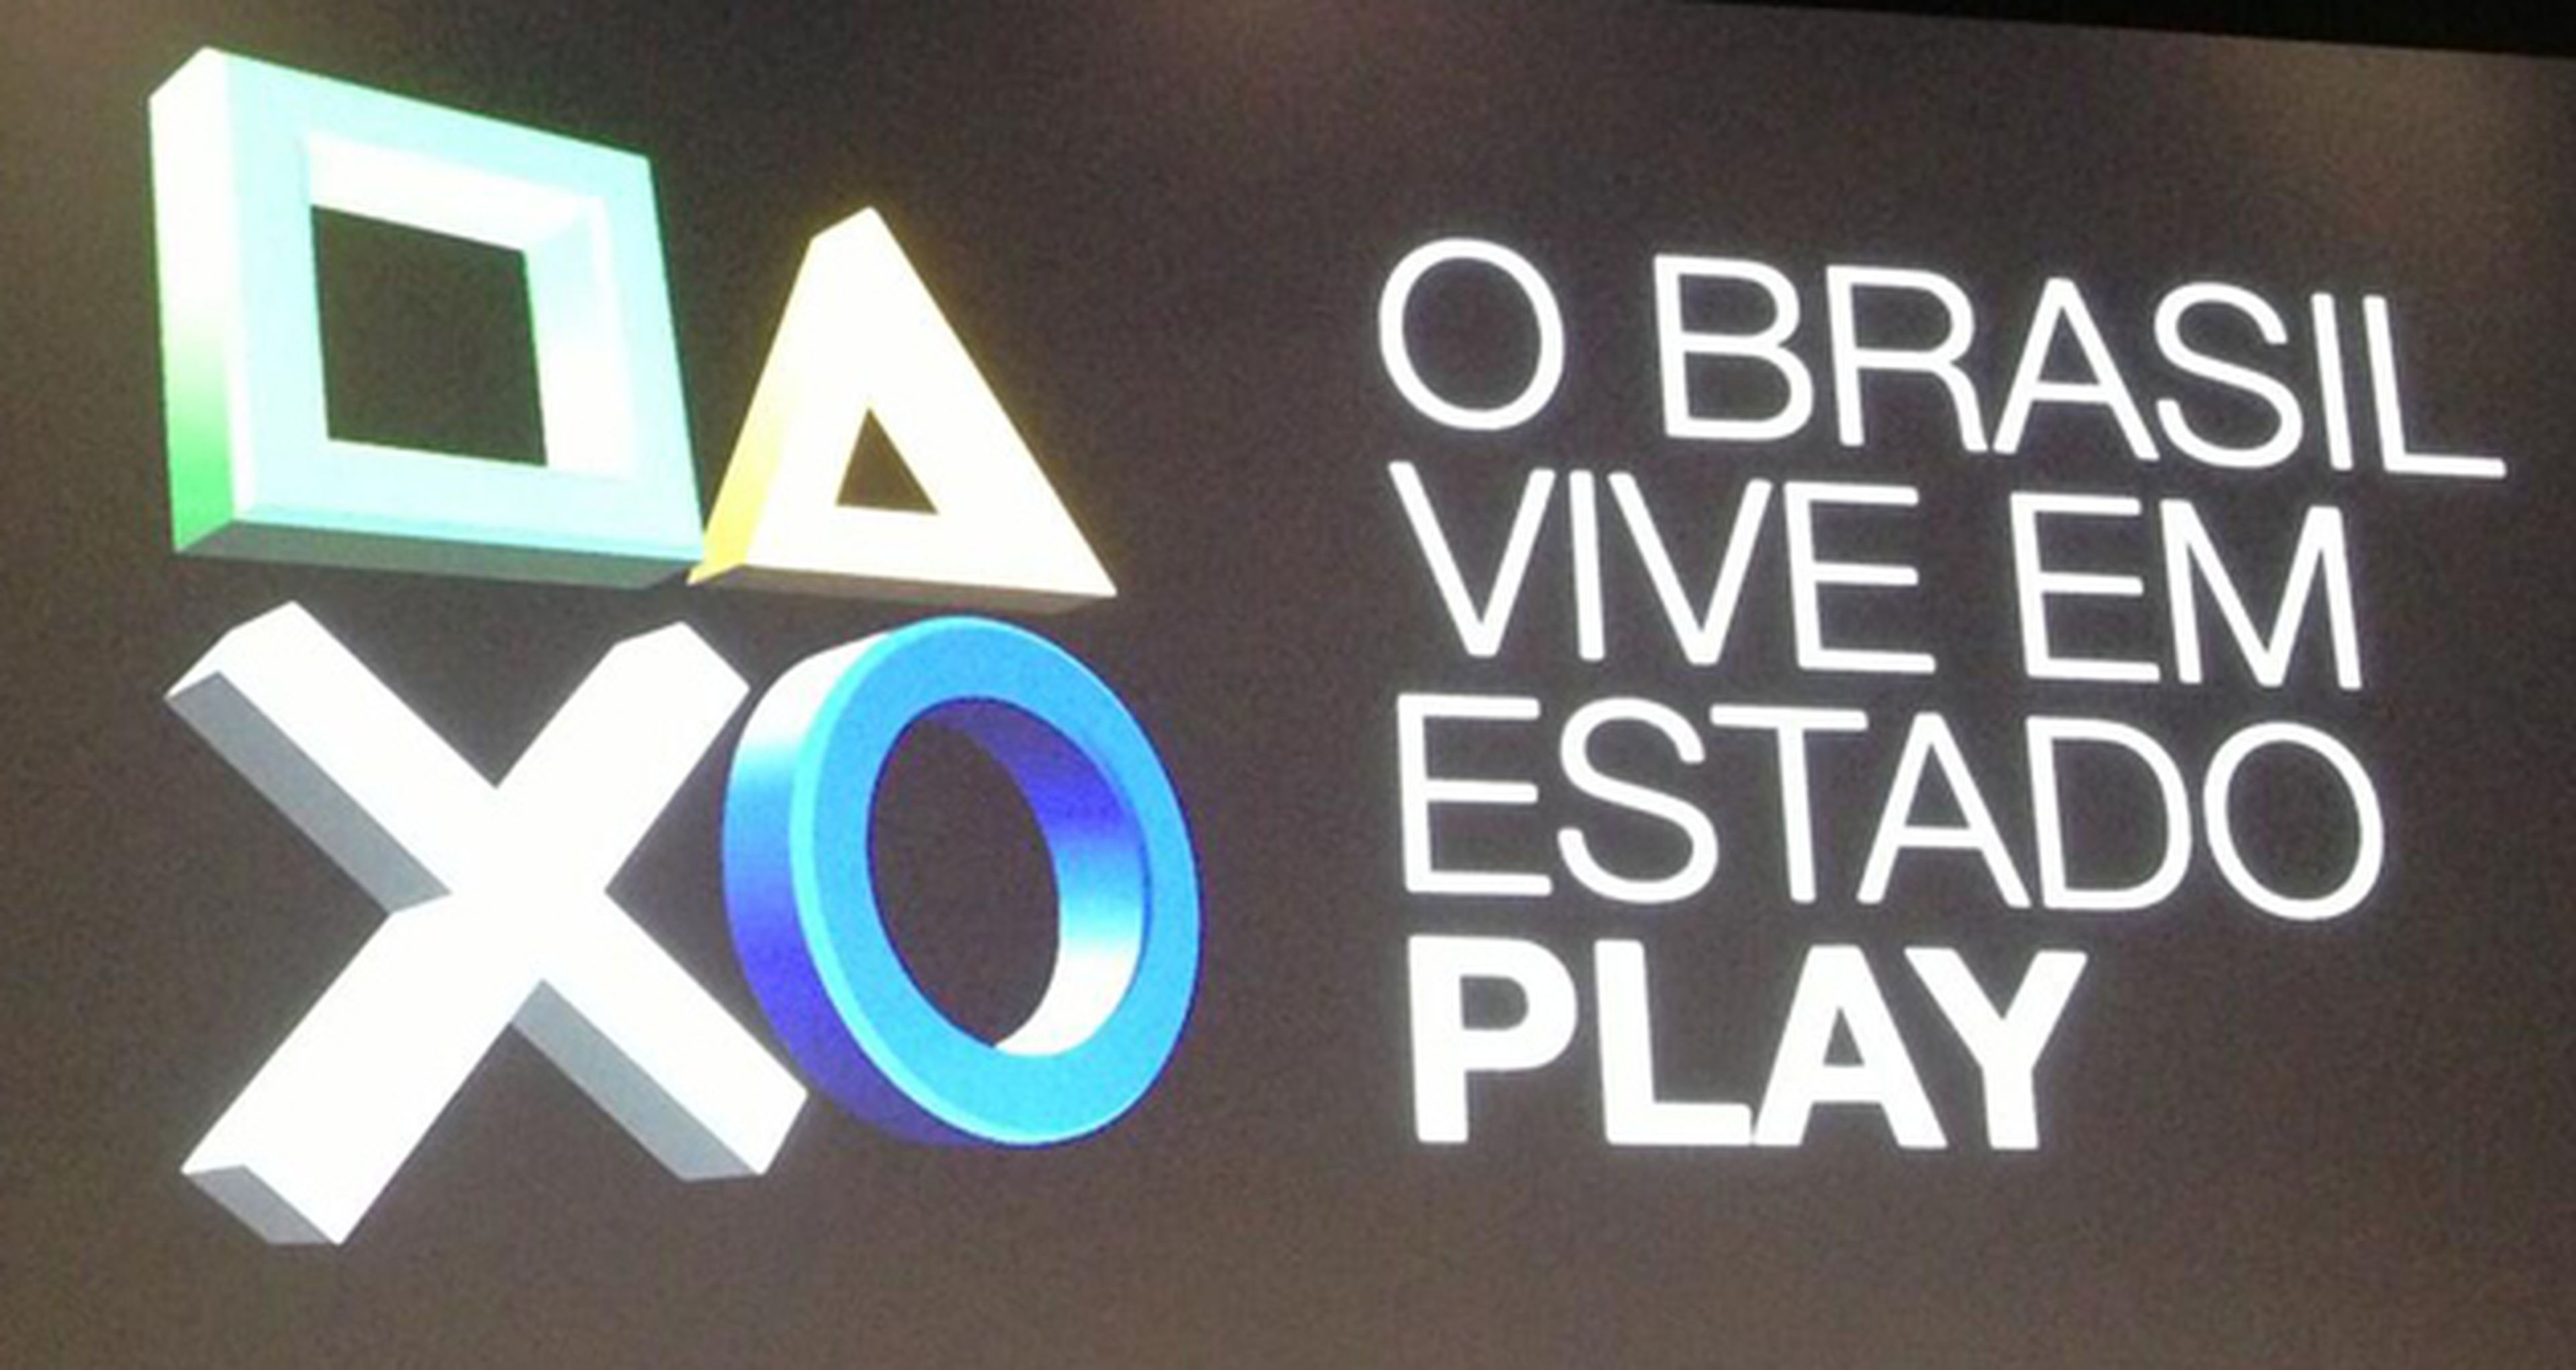 El precio de PS4 superará los 1300 euros en Brasil